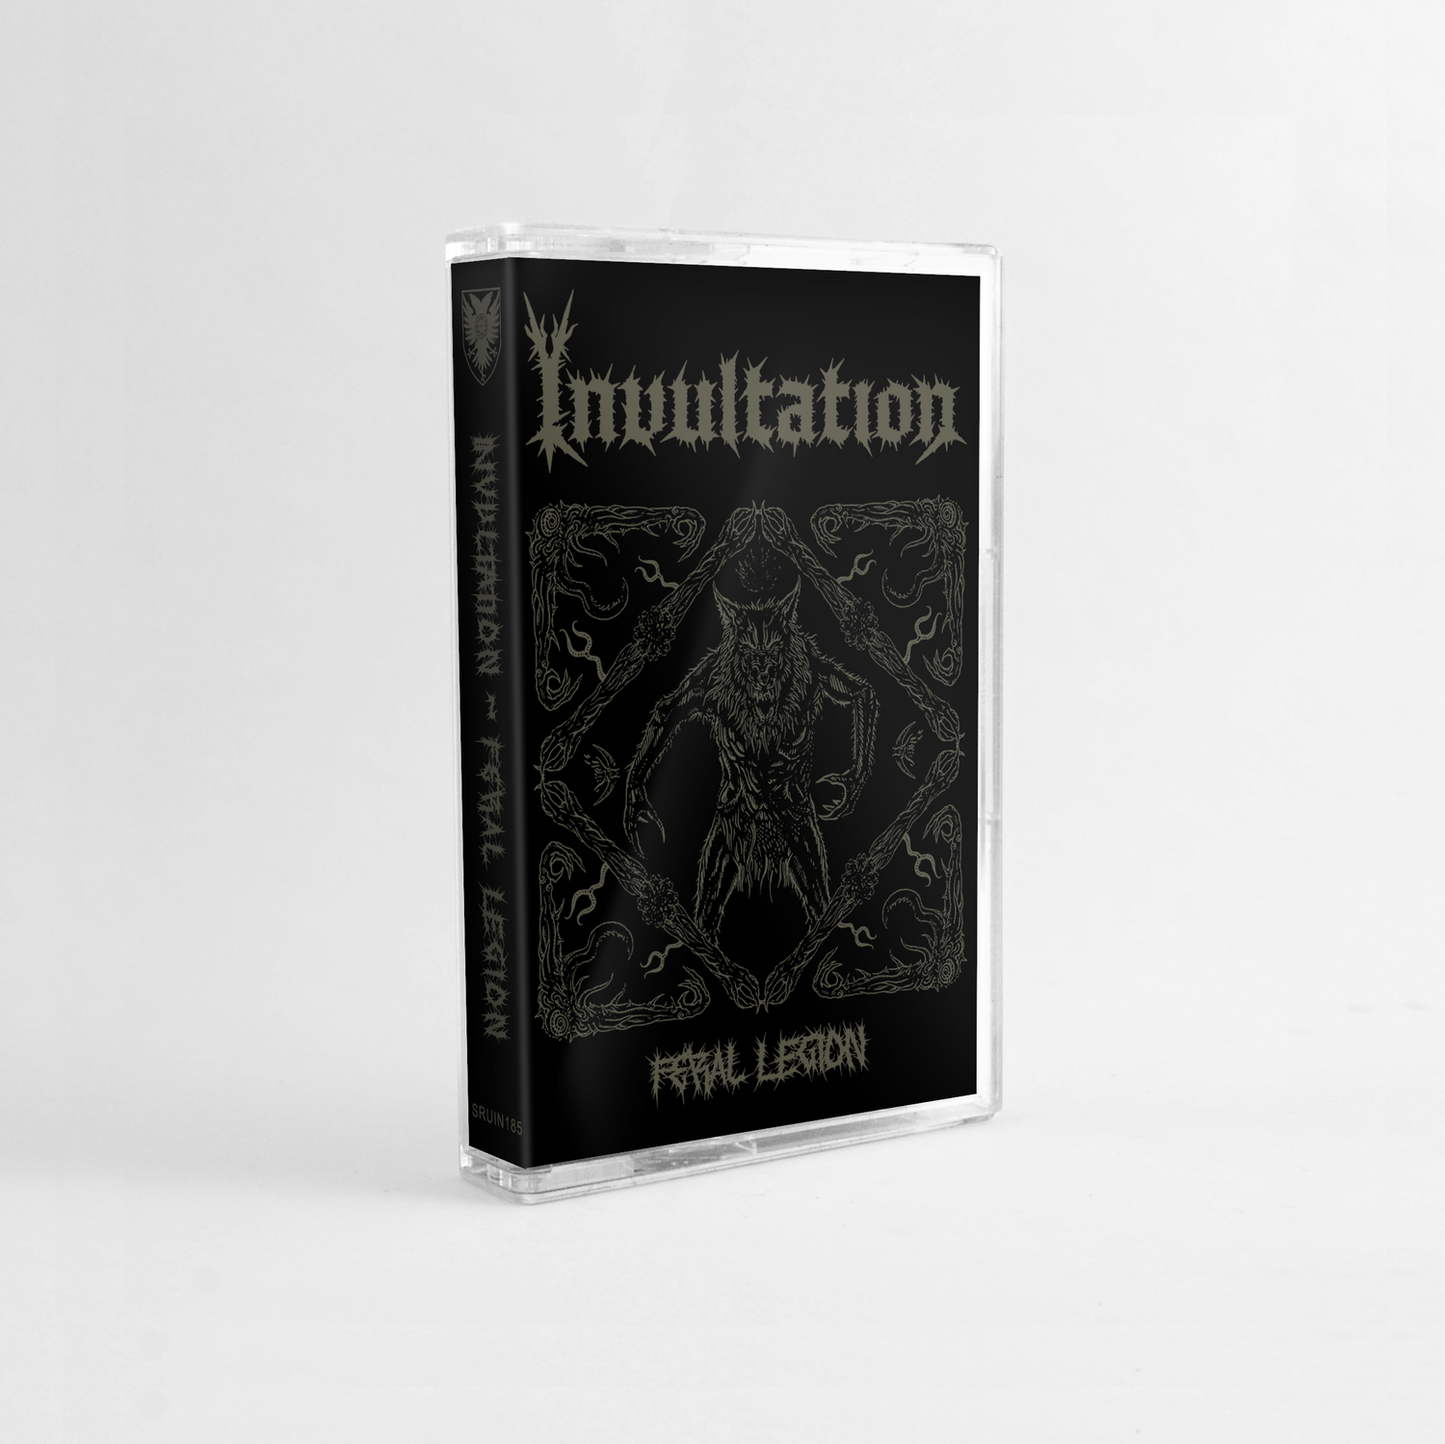 Invultation - Feral Legion cassette tape